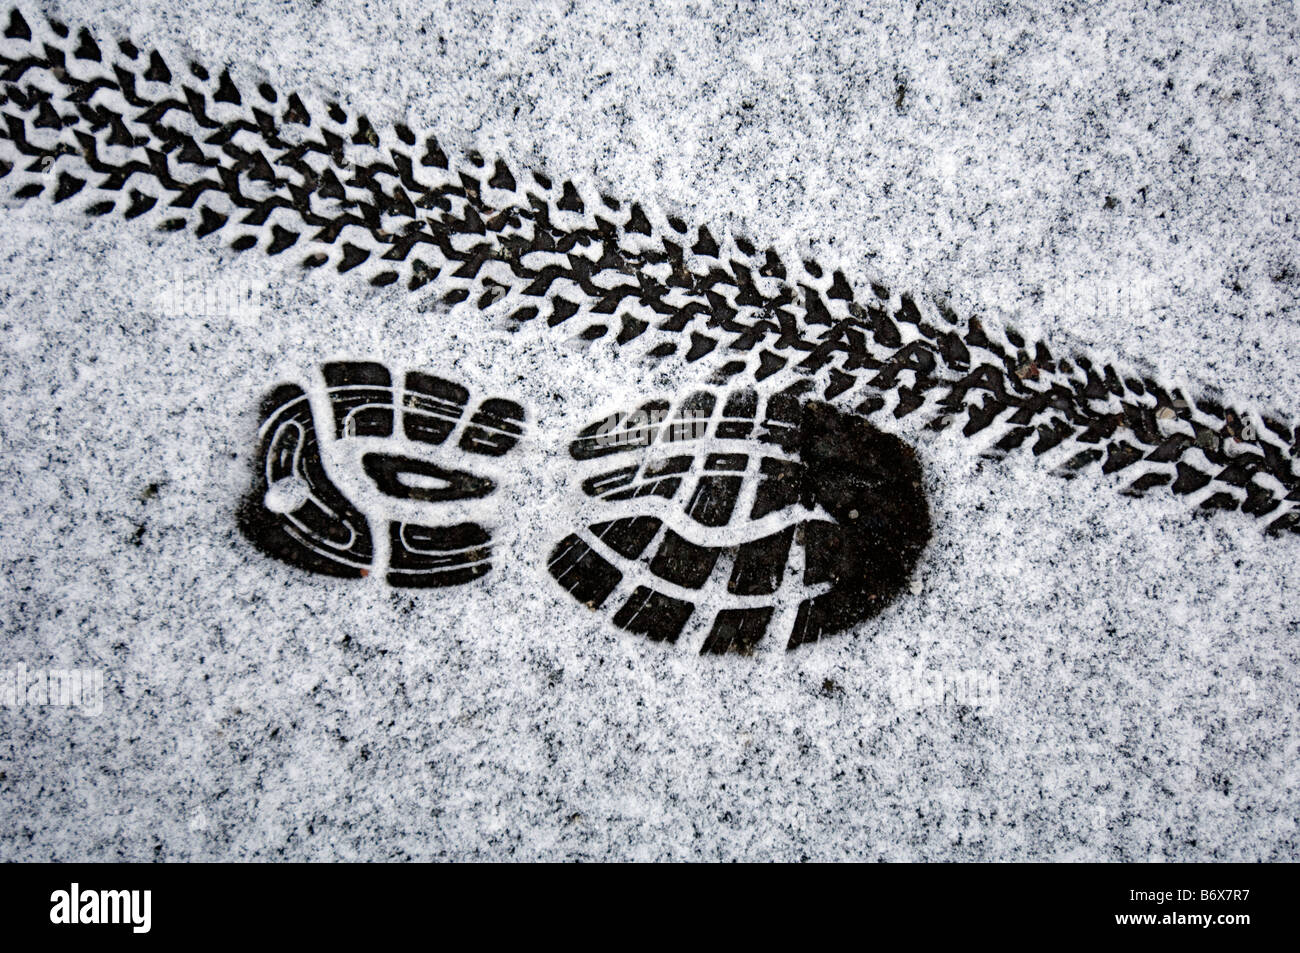 La formation d'un temps froid joggers chaussures formateur imprimer et une trace de pneu vtt imprimé sur une couche de neige en poudre Banque D'Images